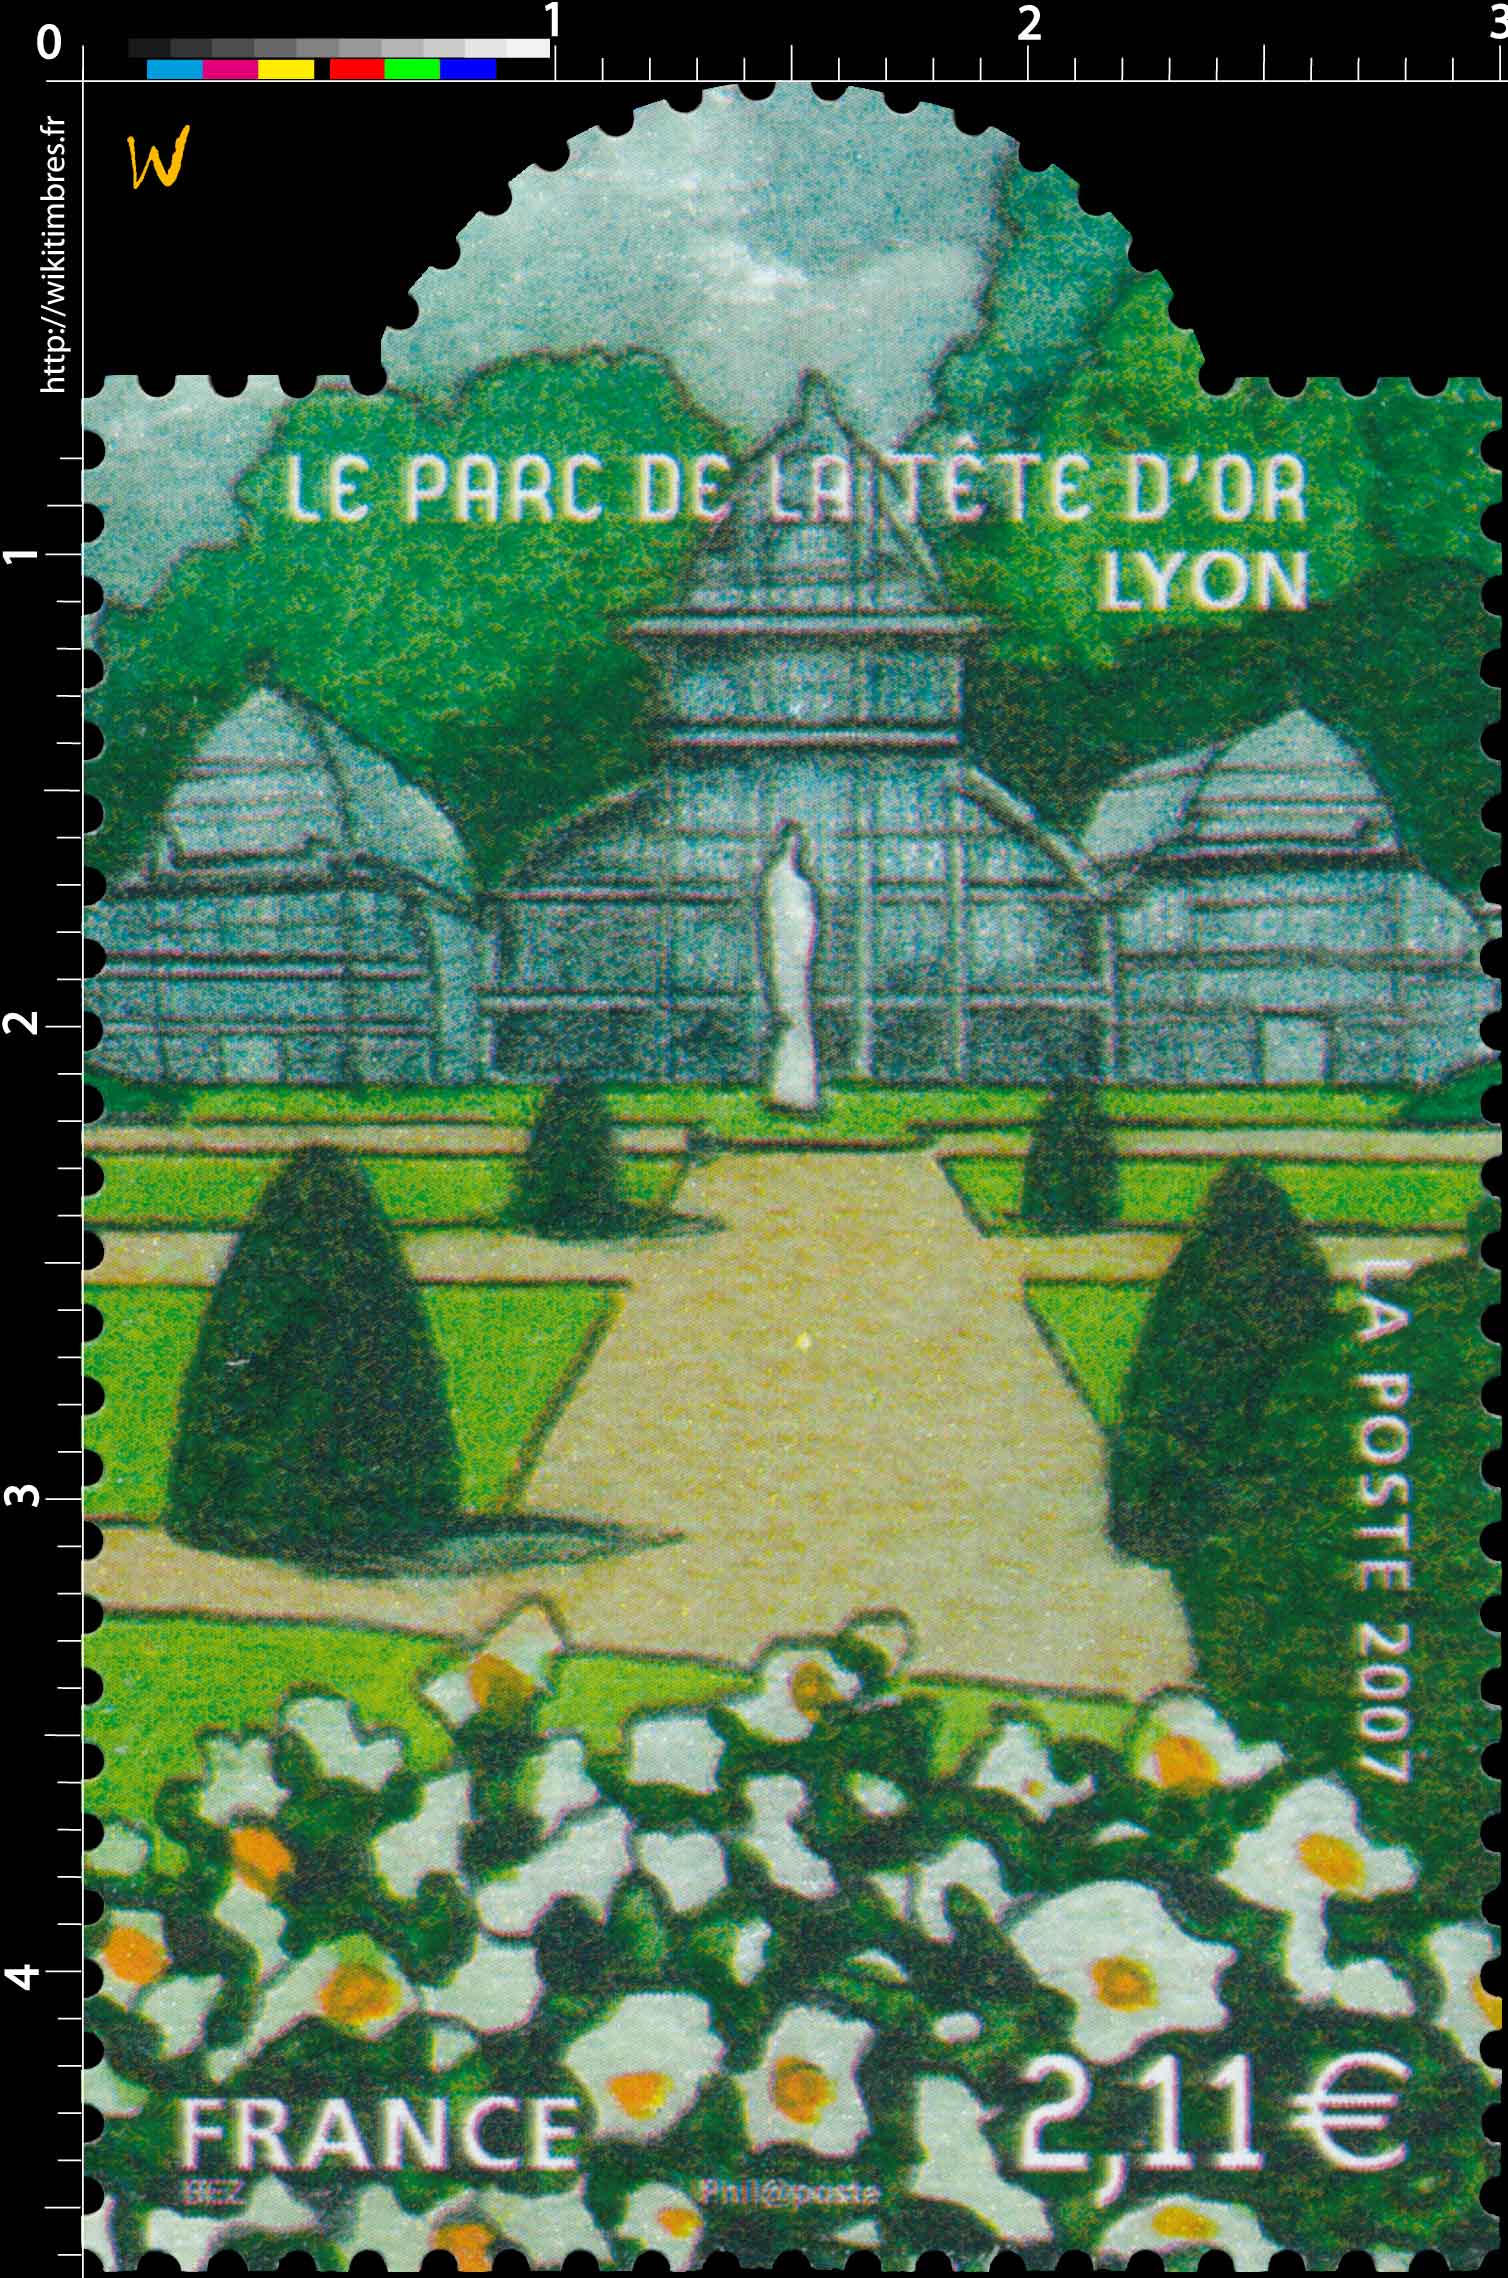 2007 LE PARC DE LA TÊTE D'OR LYON